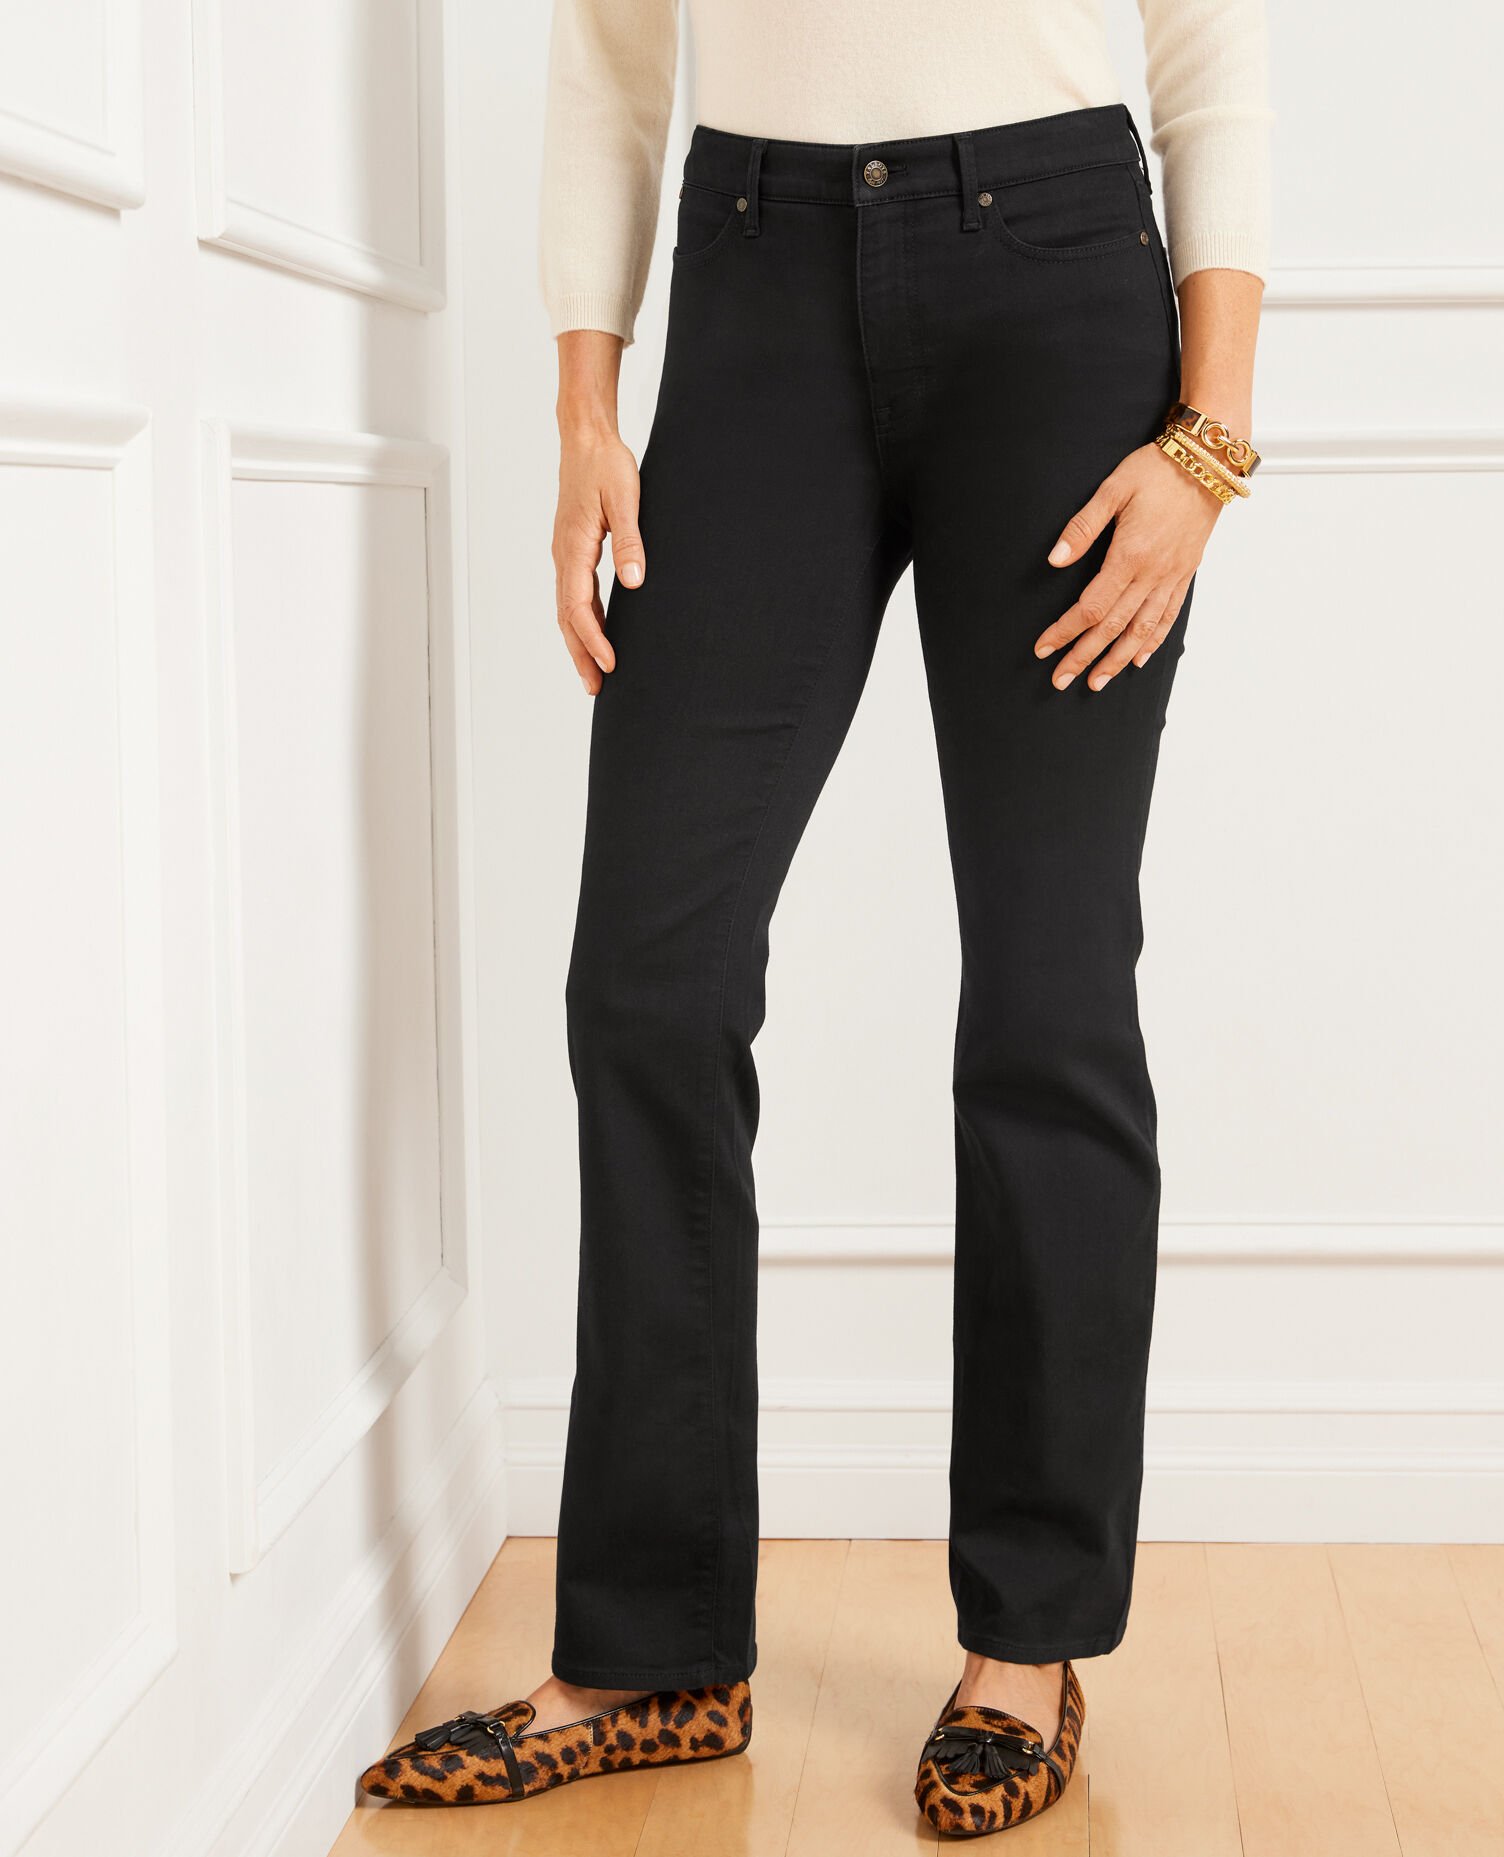 NWT Talbots Black High Waist Wide Leg Crop Denim Jeans Size 8P